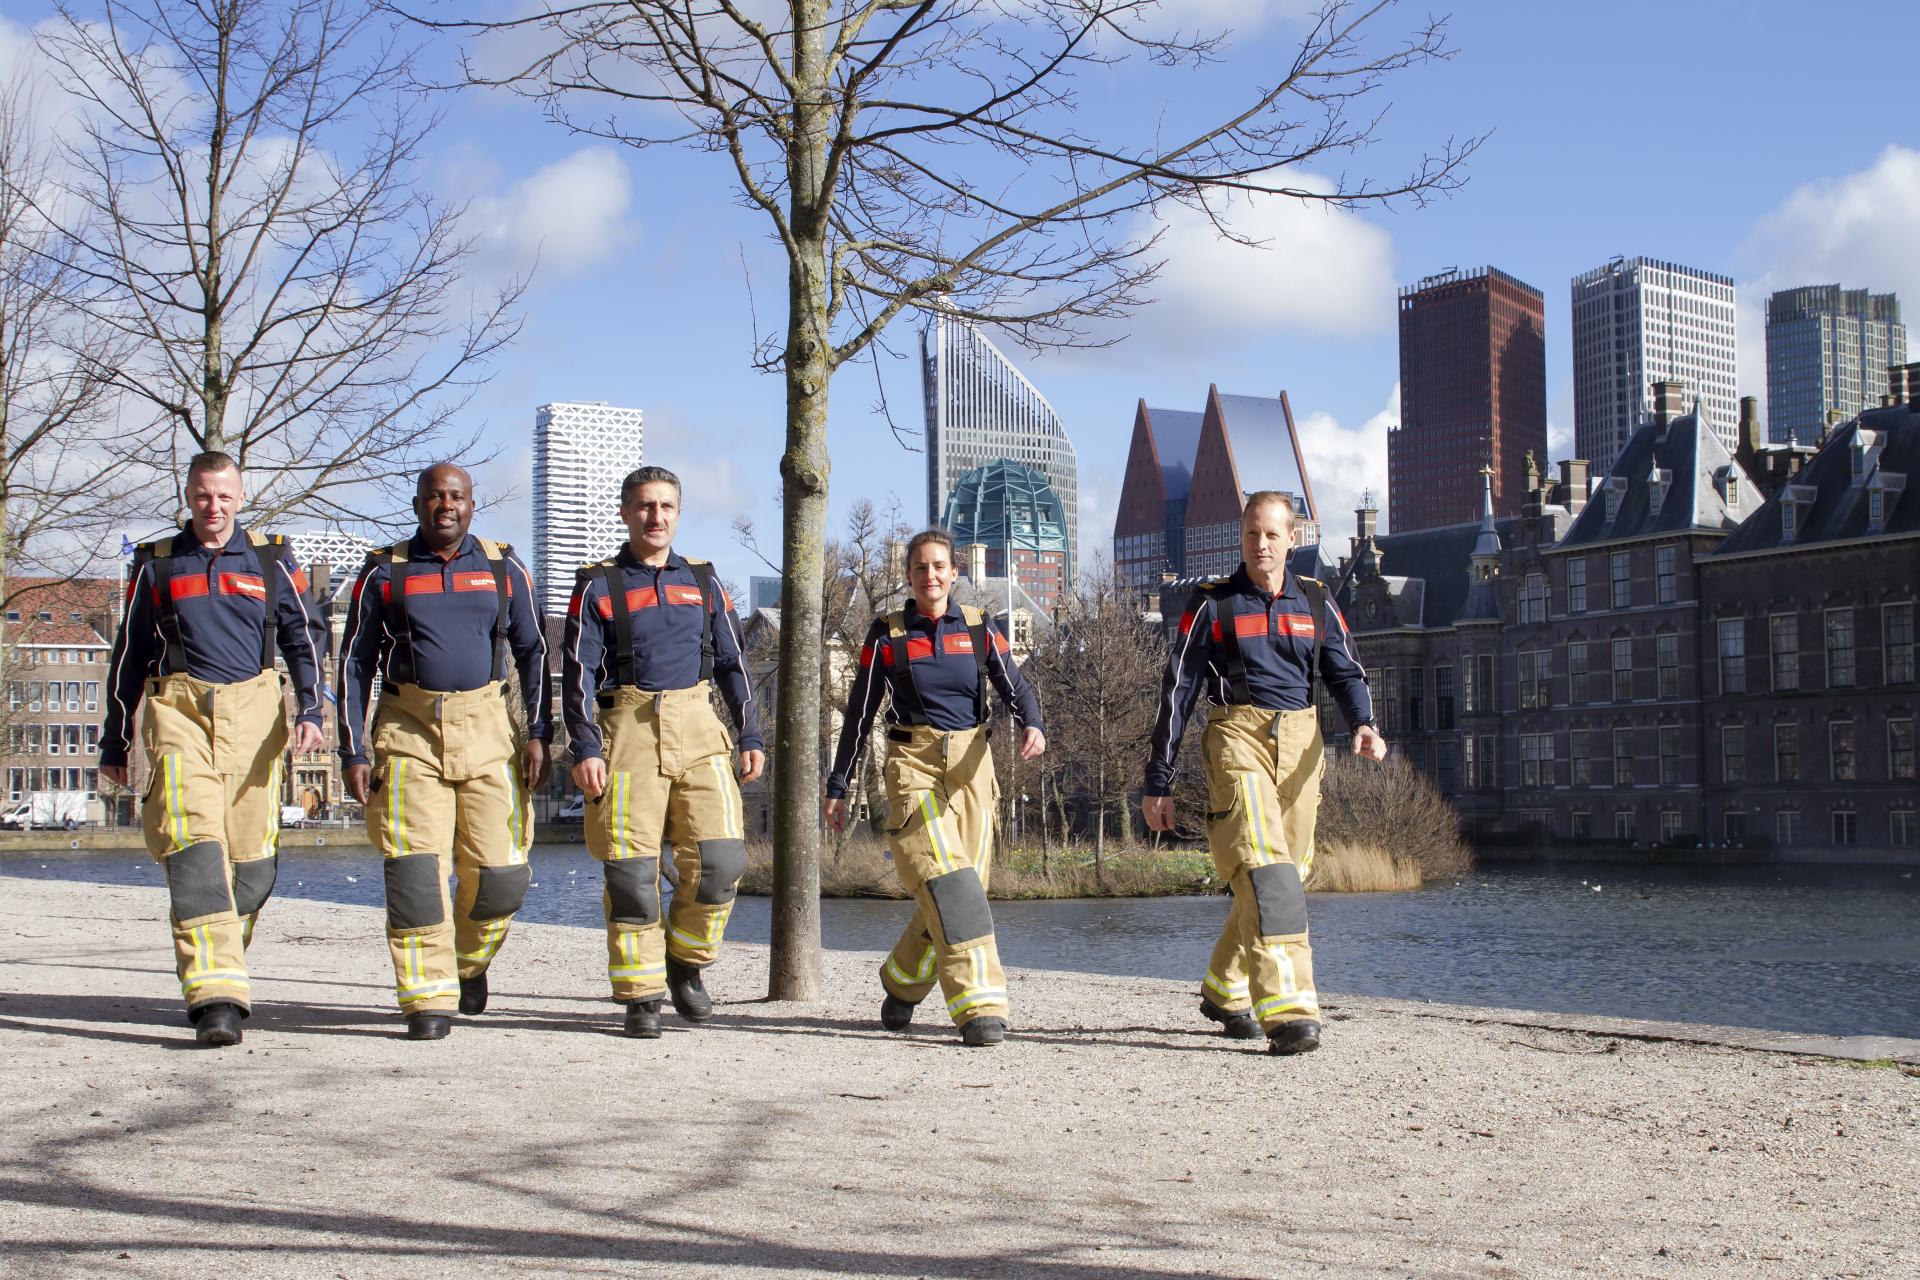 Brandweer toont nieuwe interventiekleding bij Binnenhof Den Haag